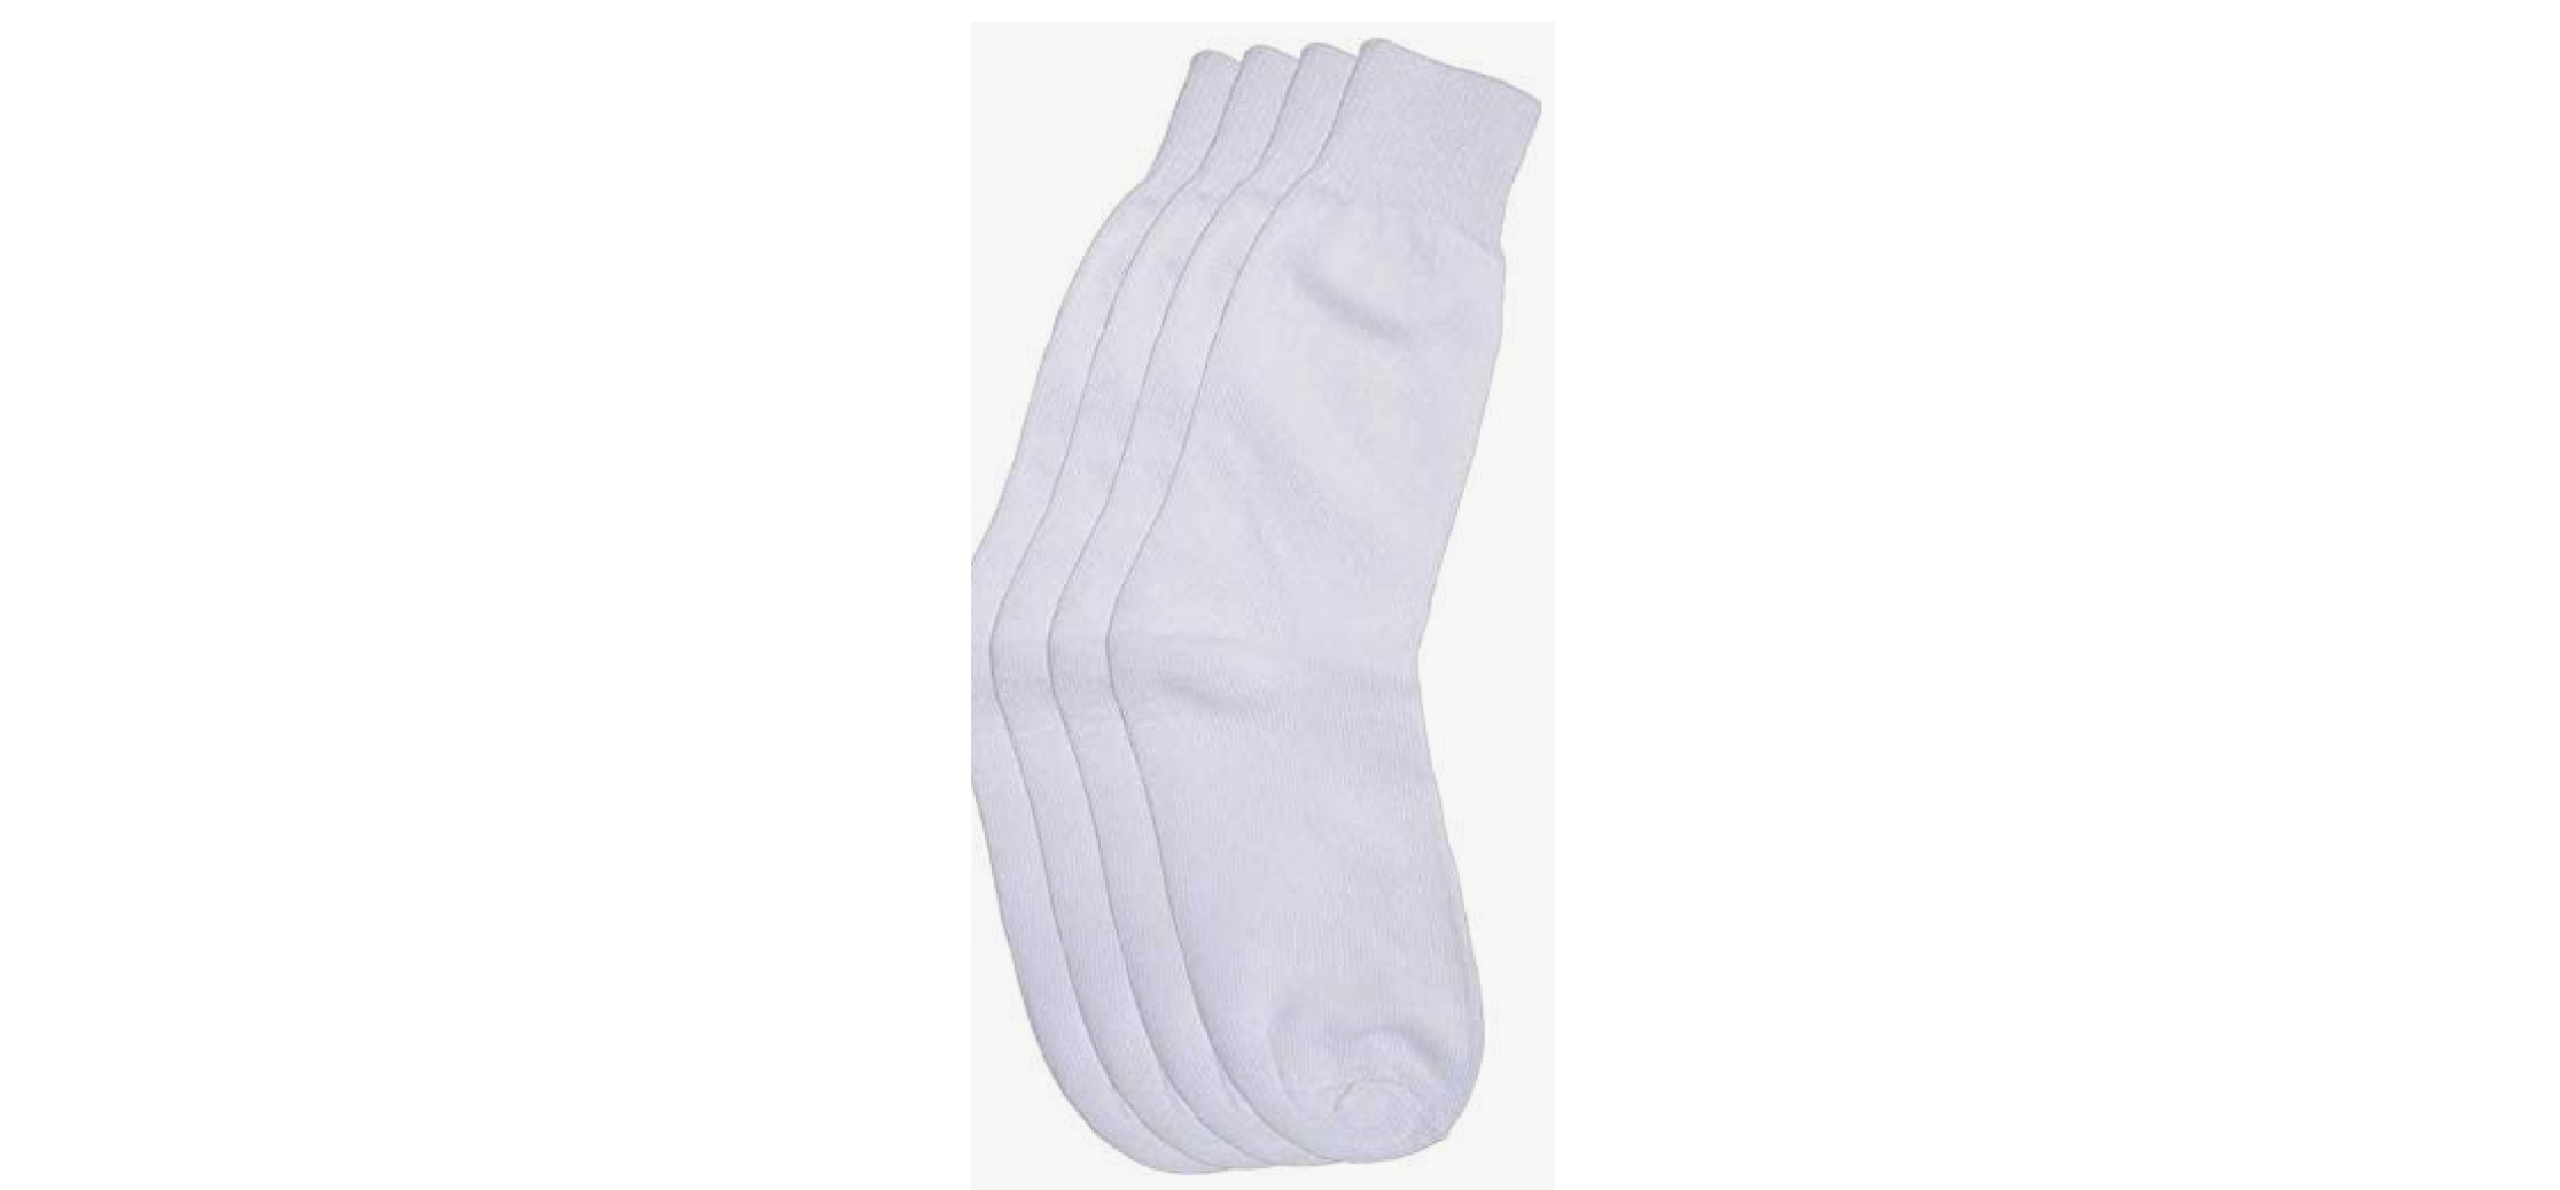 School Socks White